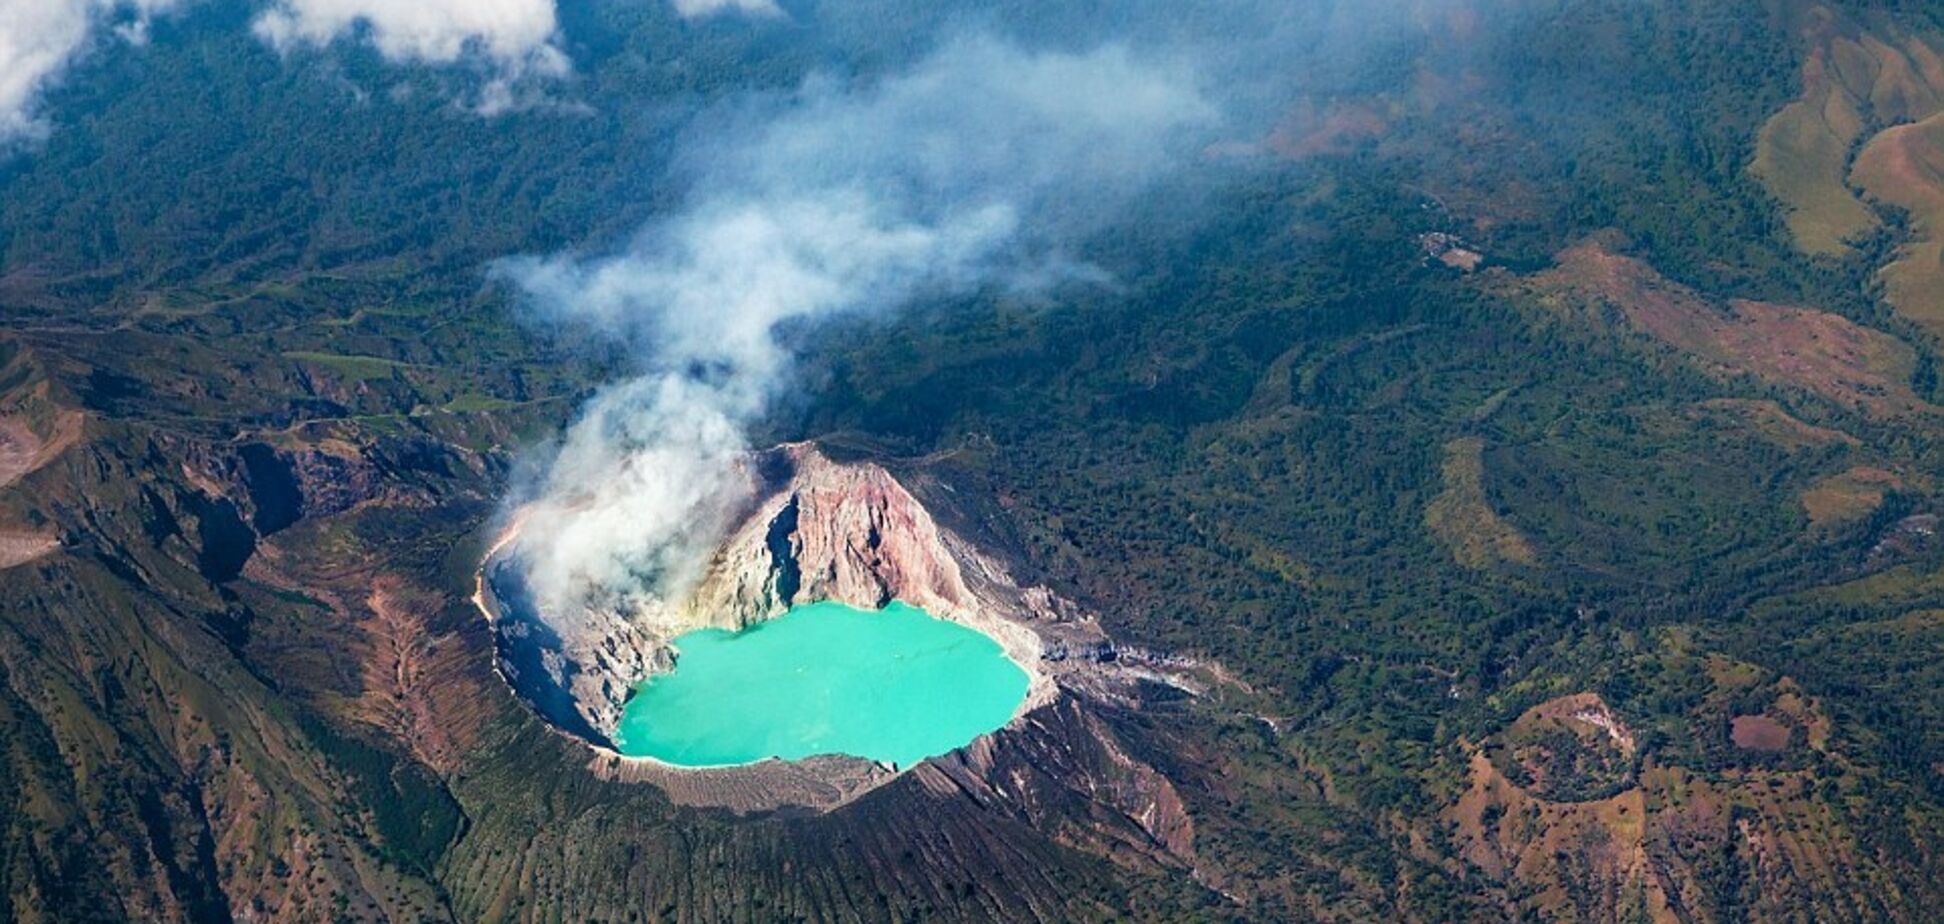 Випалена земля і сірчані озера: як виглядають кратери найстрашніших вулканів